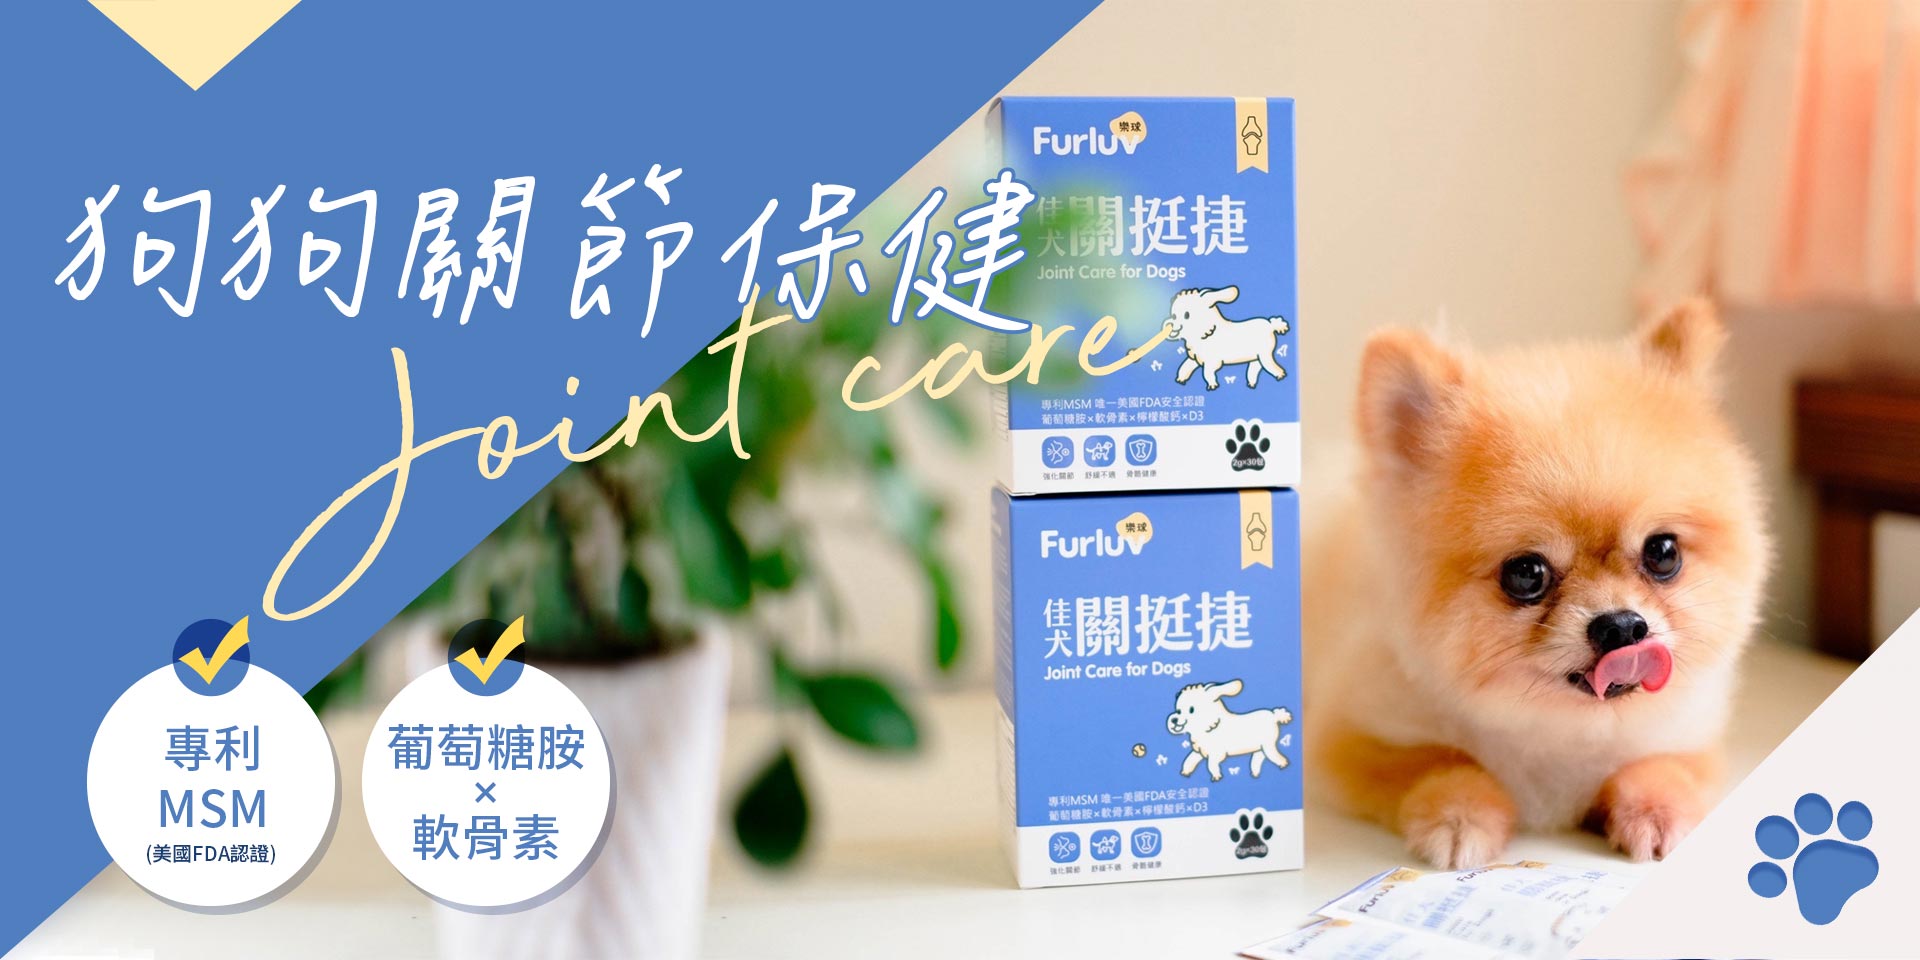 寵物保健 - UNIQMAN 優仕曼 官方網站︱ 男性保健第一領導品牌